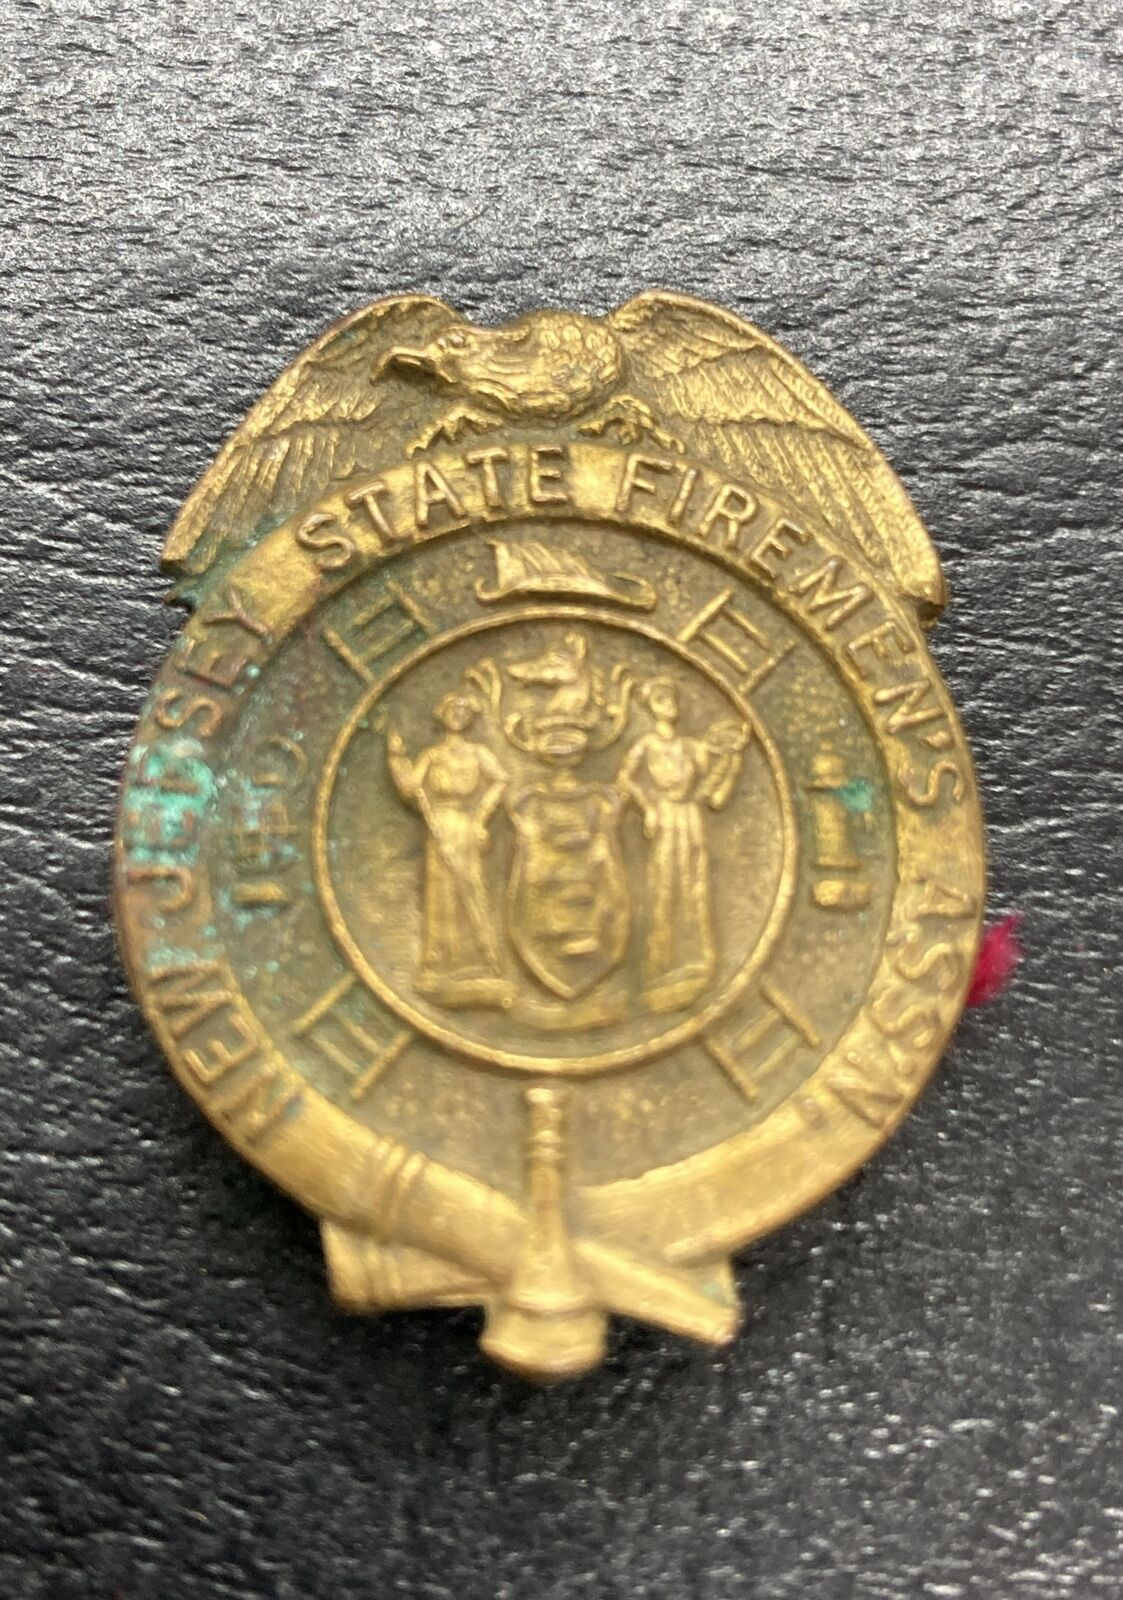 Antique NJ State Firemans Association Assn Member Pin New Jersey As Is